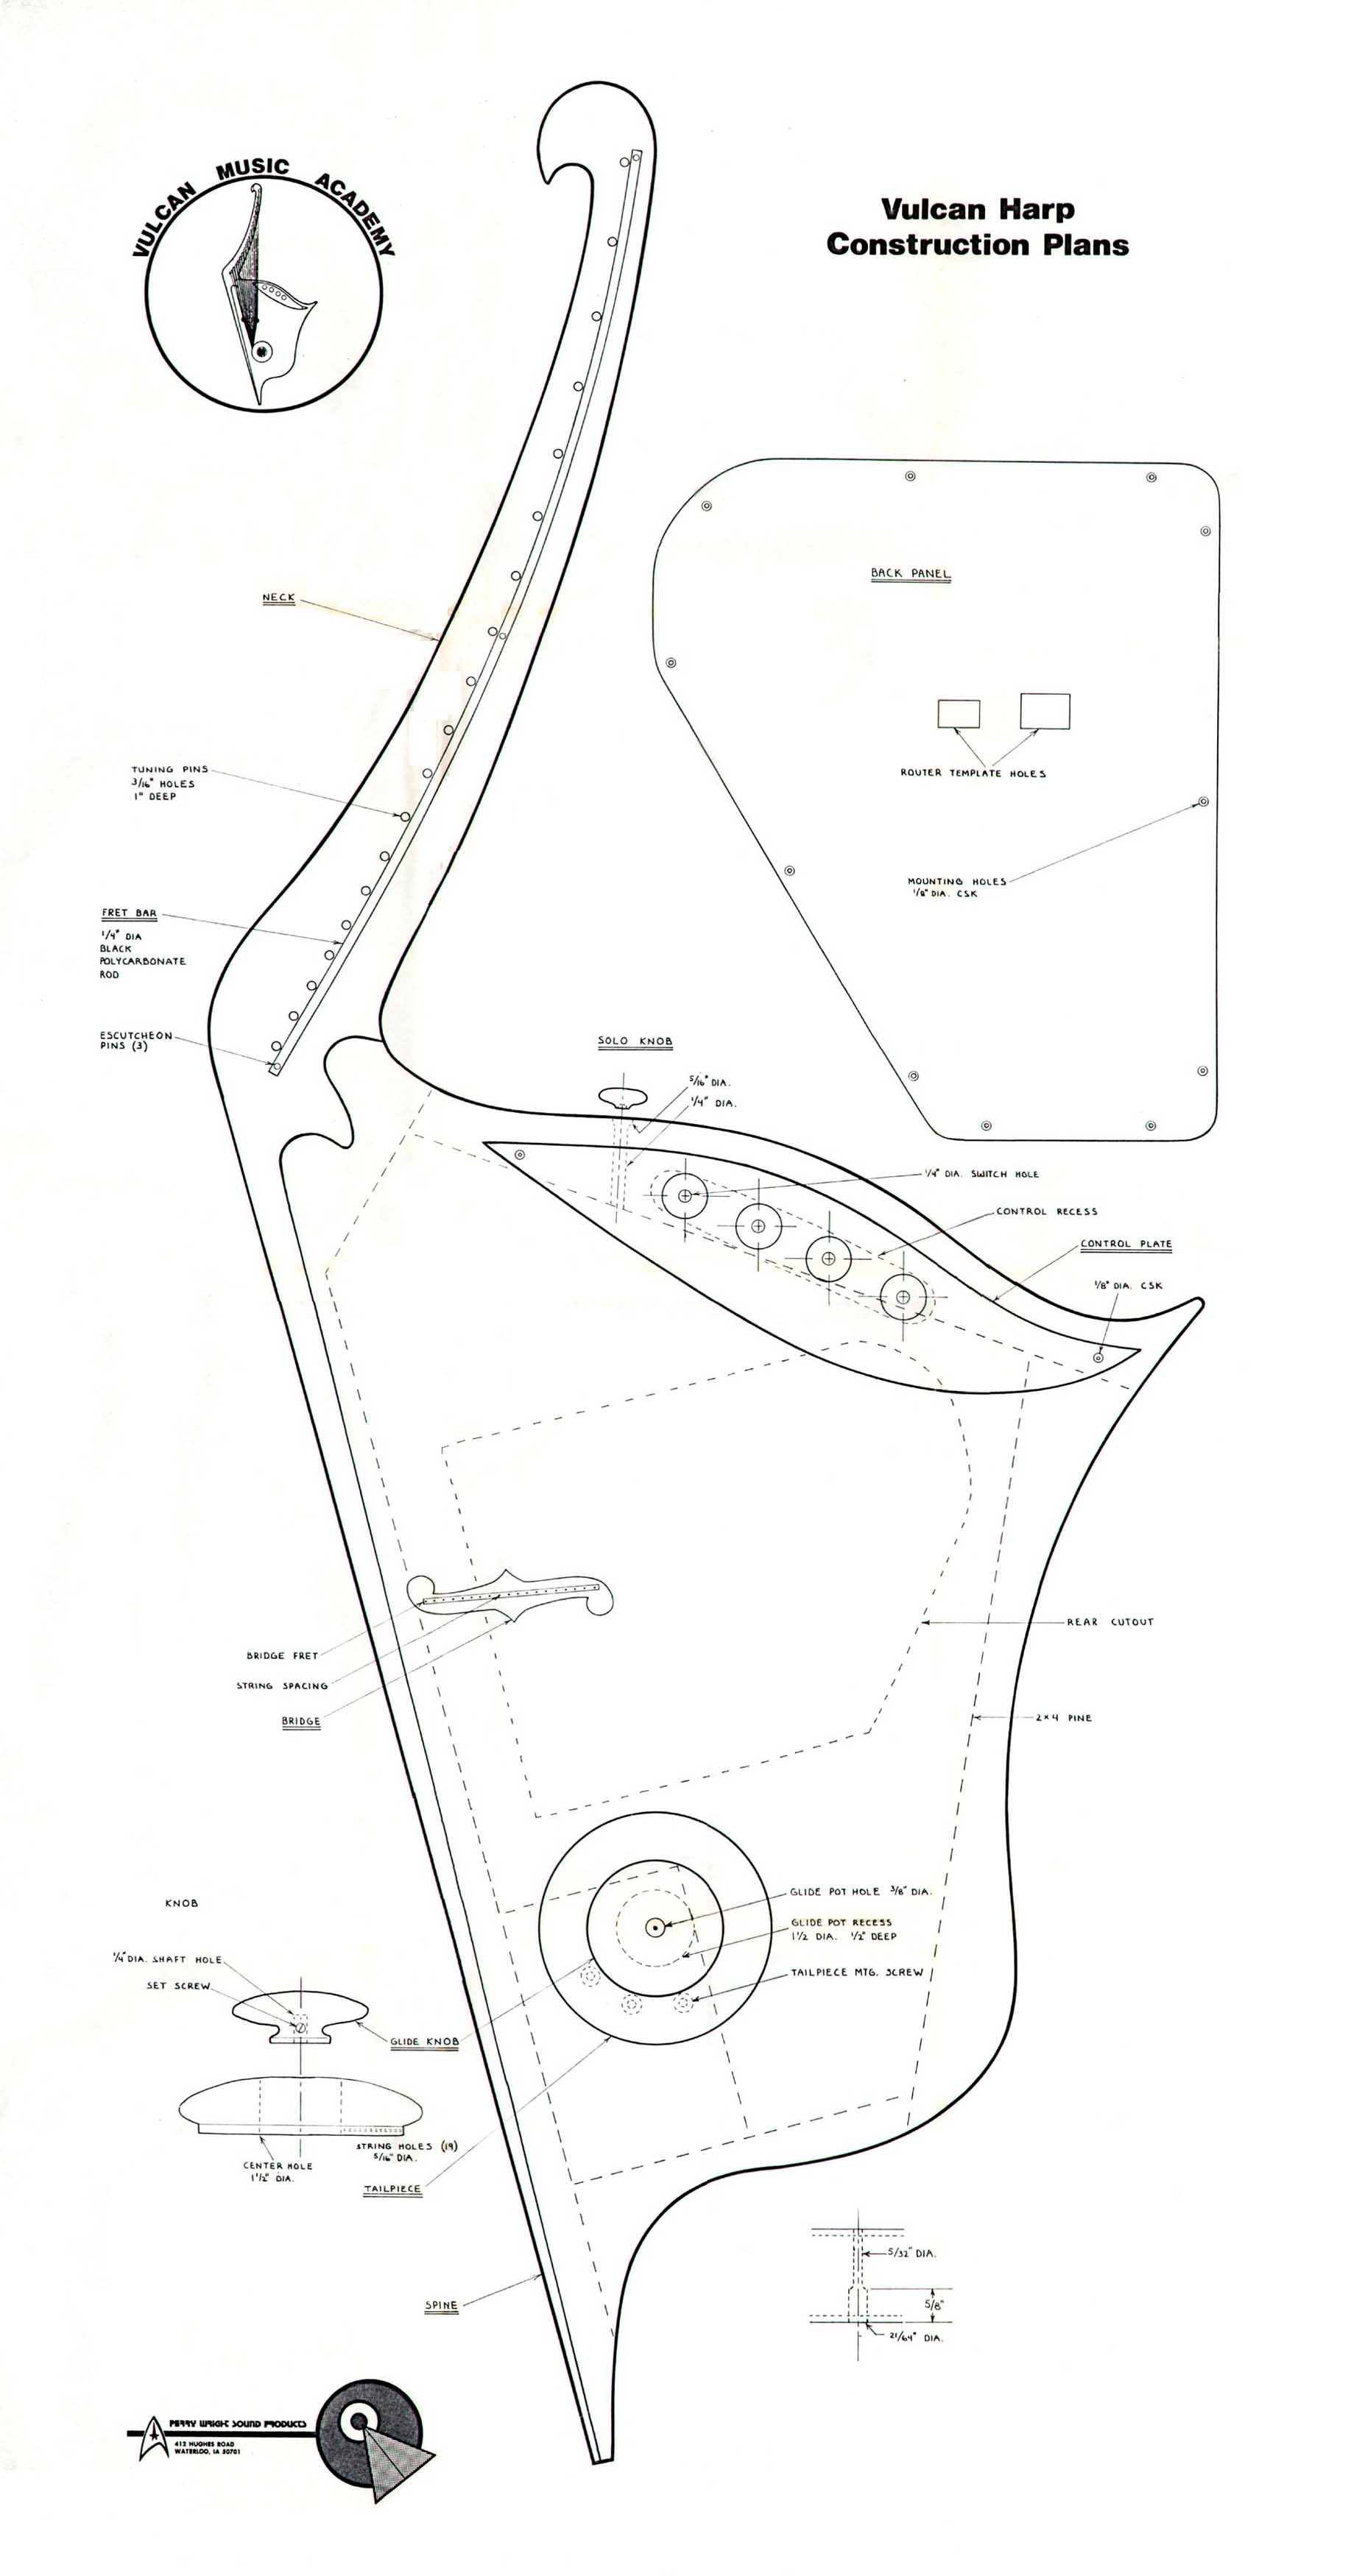 s37876vulcan-harp-construction-plans-sheet-12h219.jpg